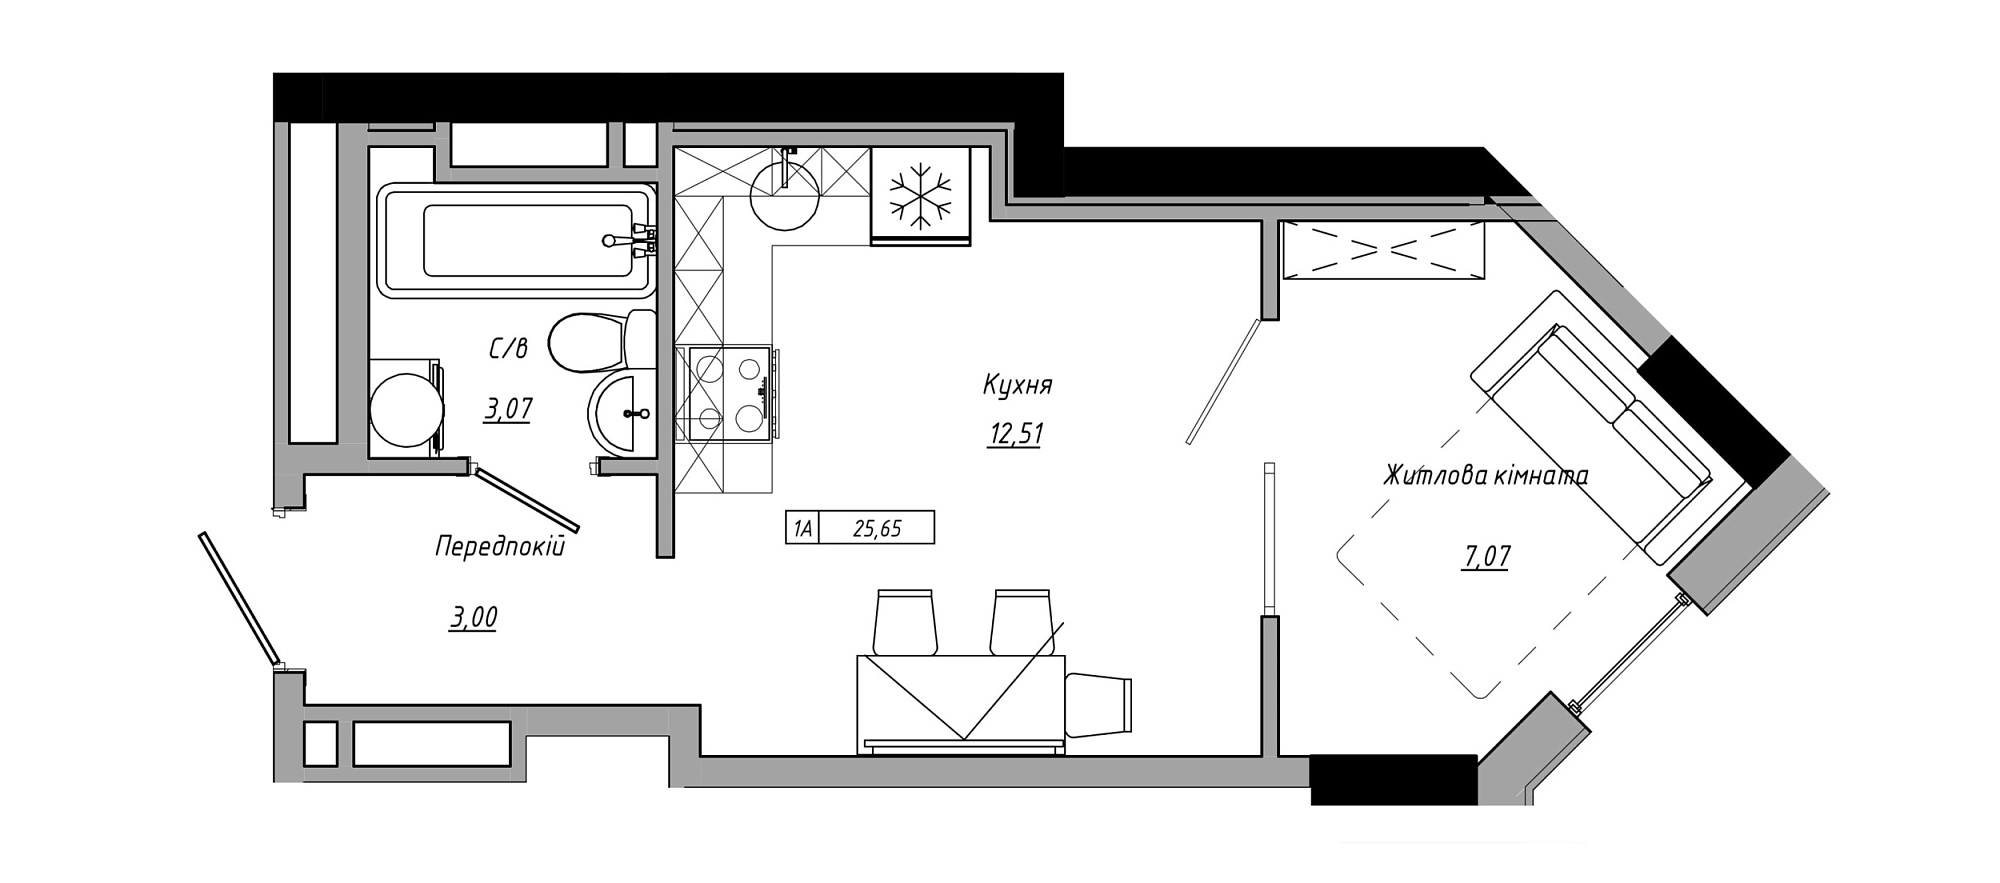 Планировка 1-к квартира площей 25.65м2, AB-21-05/00001.